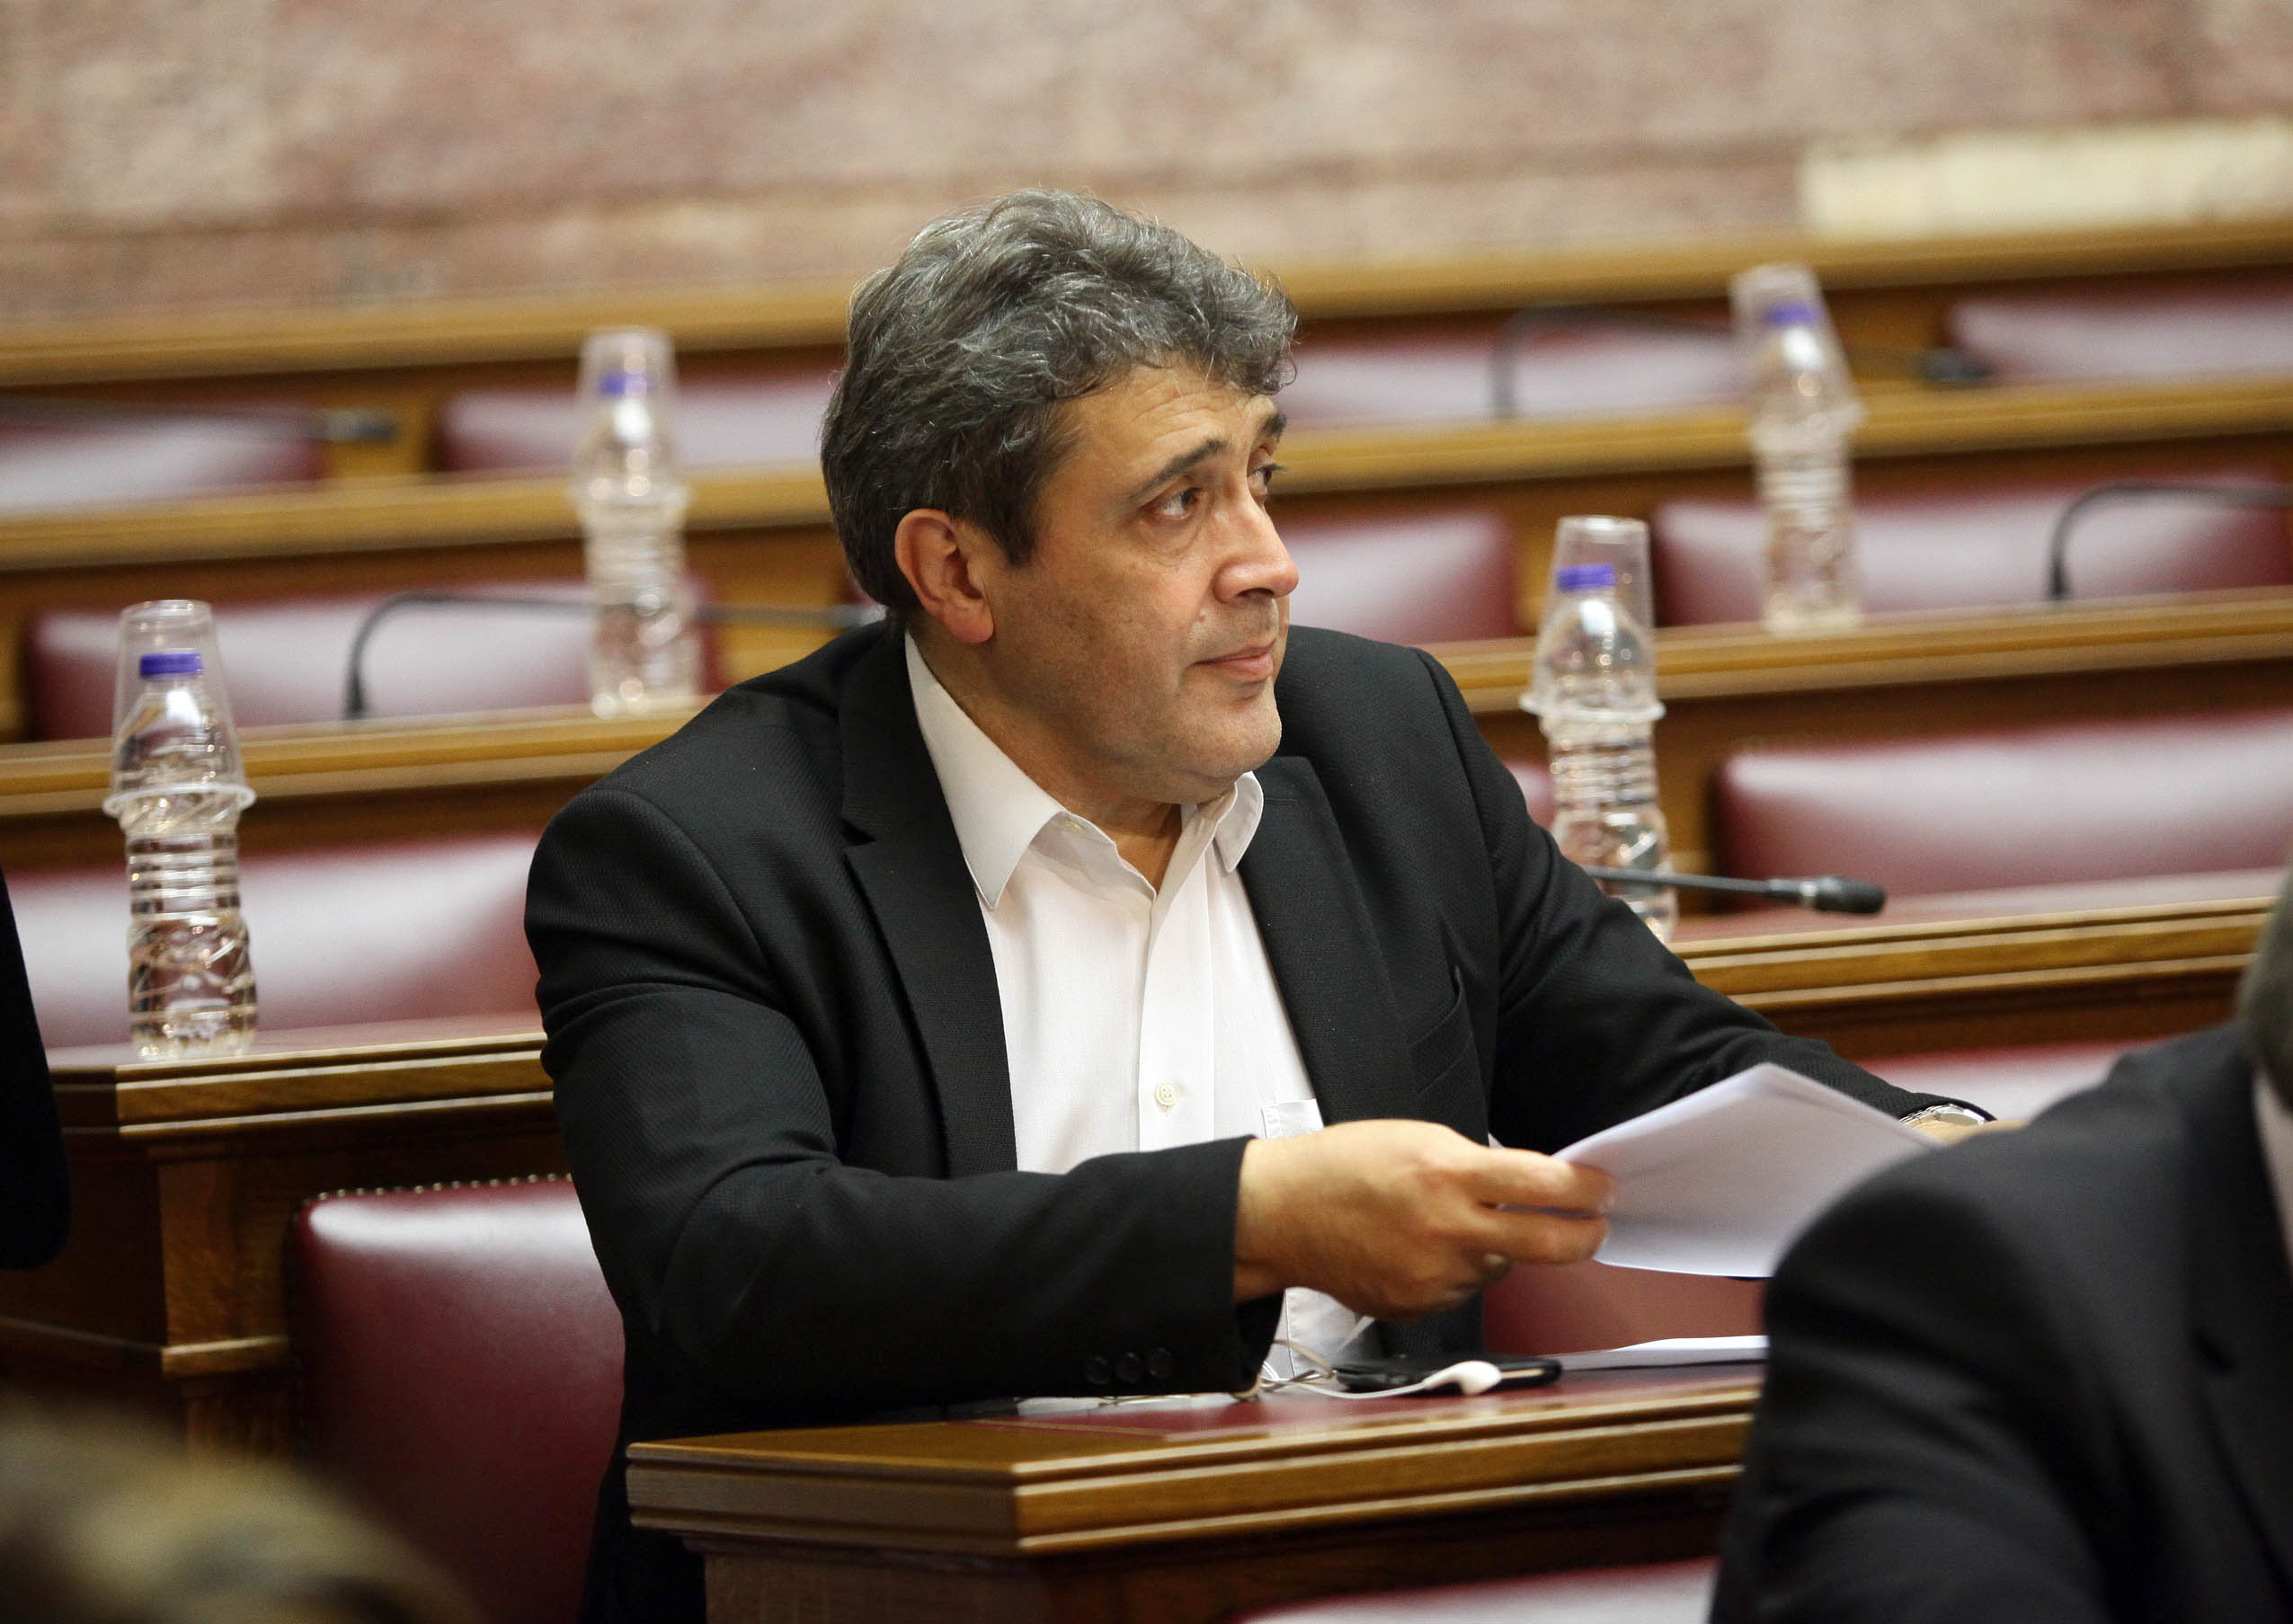 Ν. Ηγουμενίδης: Η Υπουργός Πολιτισμού αναιρεί τις δεσμεύσεις της στο χρονοδιάγραμμα του φακέλου για την Κνωσό